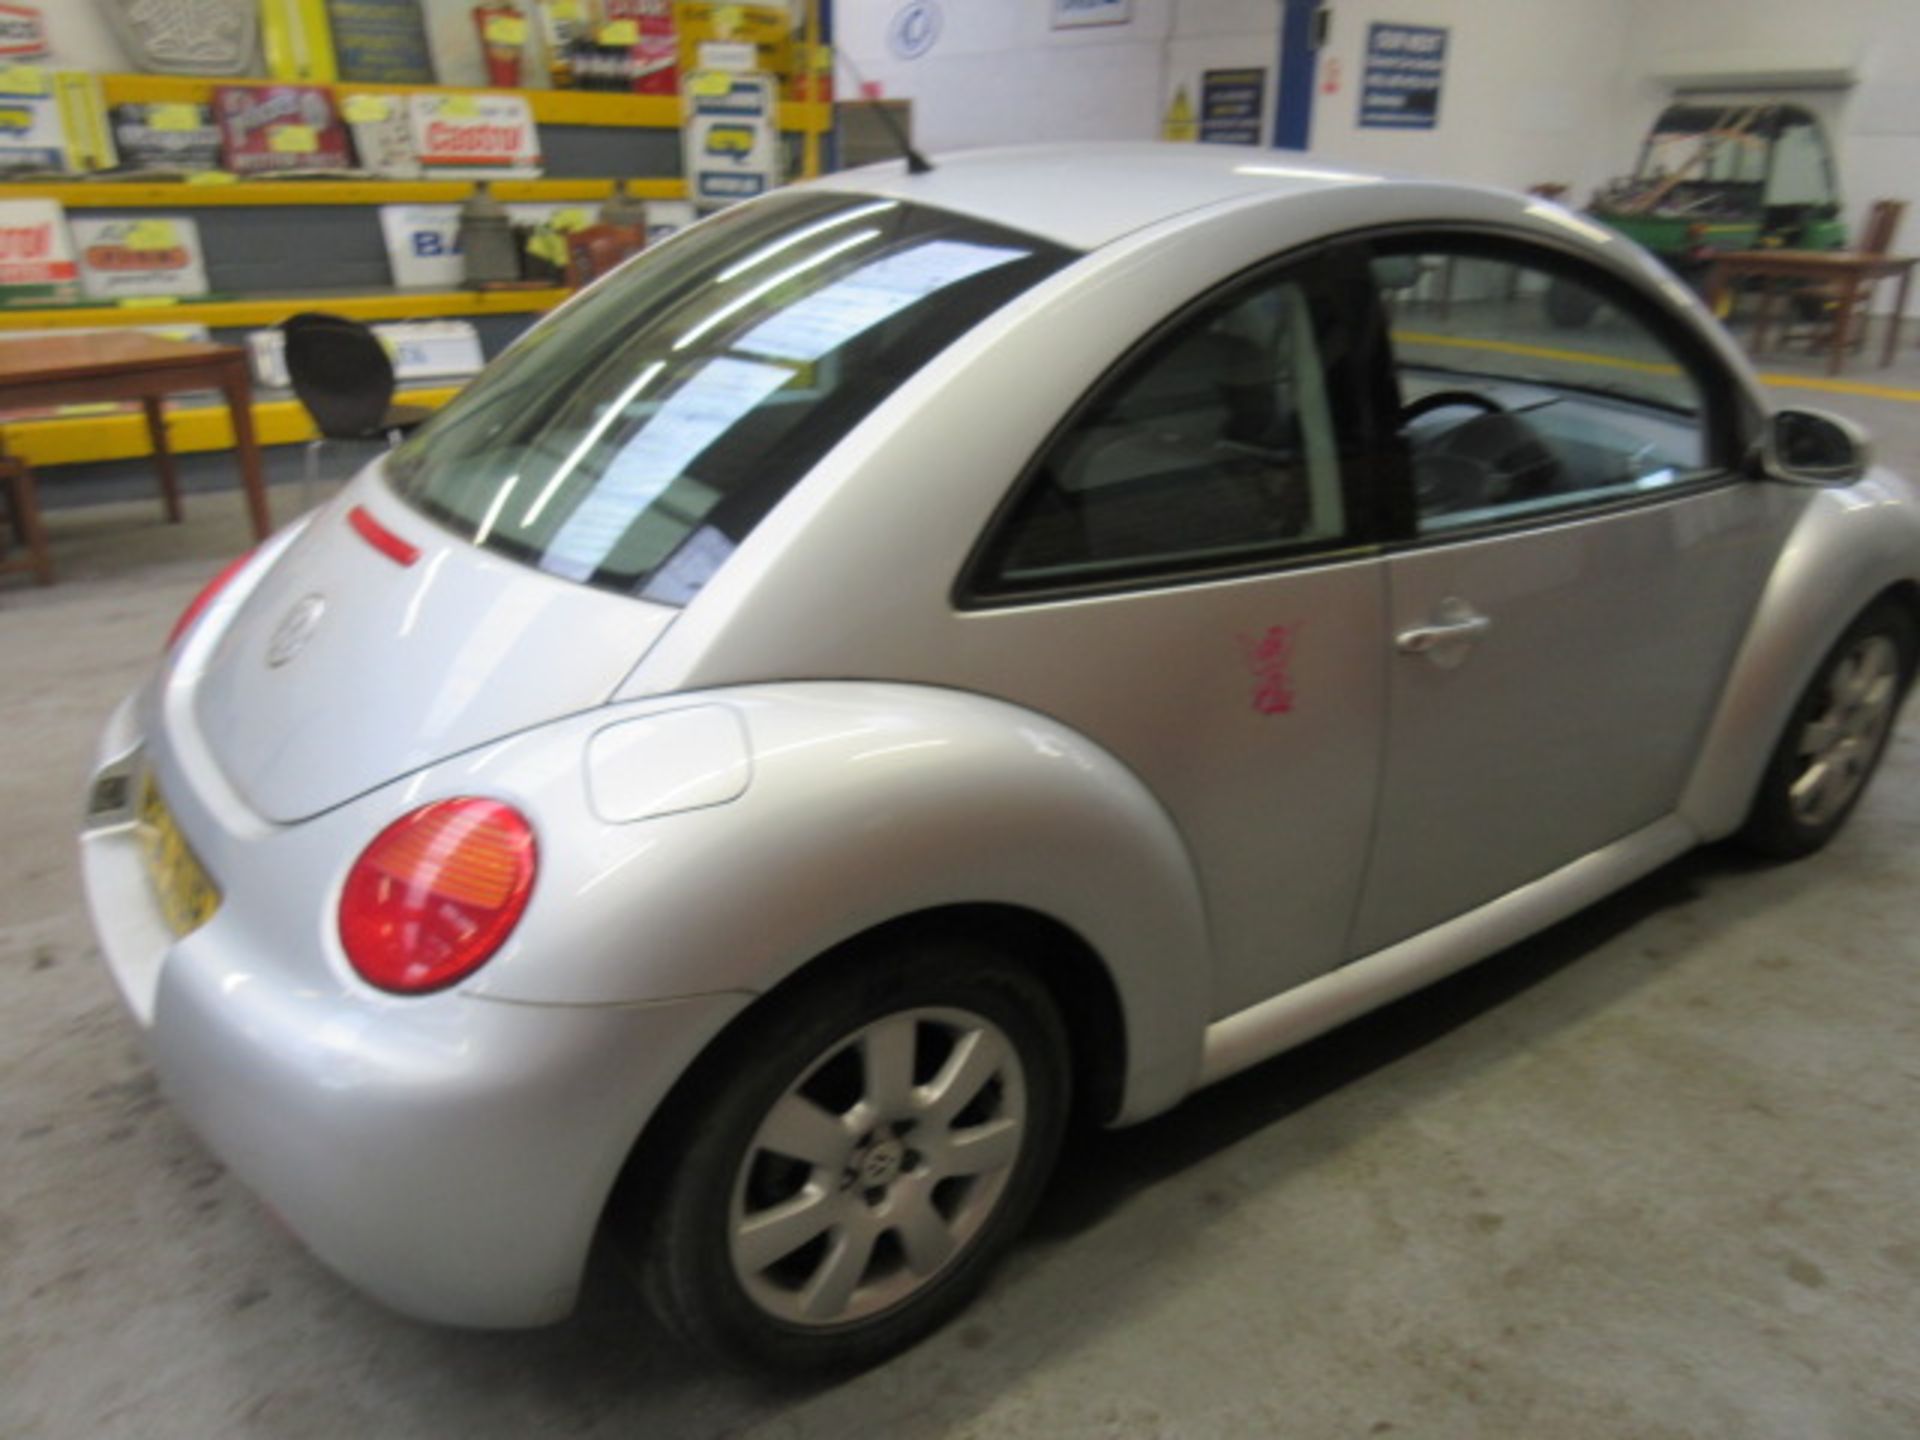 04 04 VW Beetle - Image 11 of 19